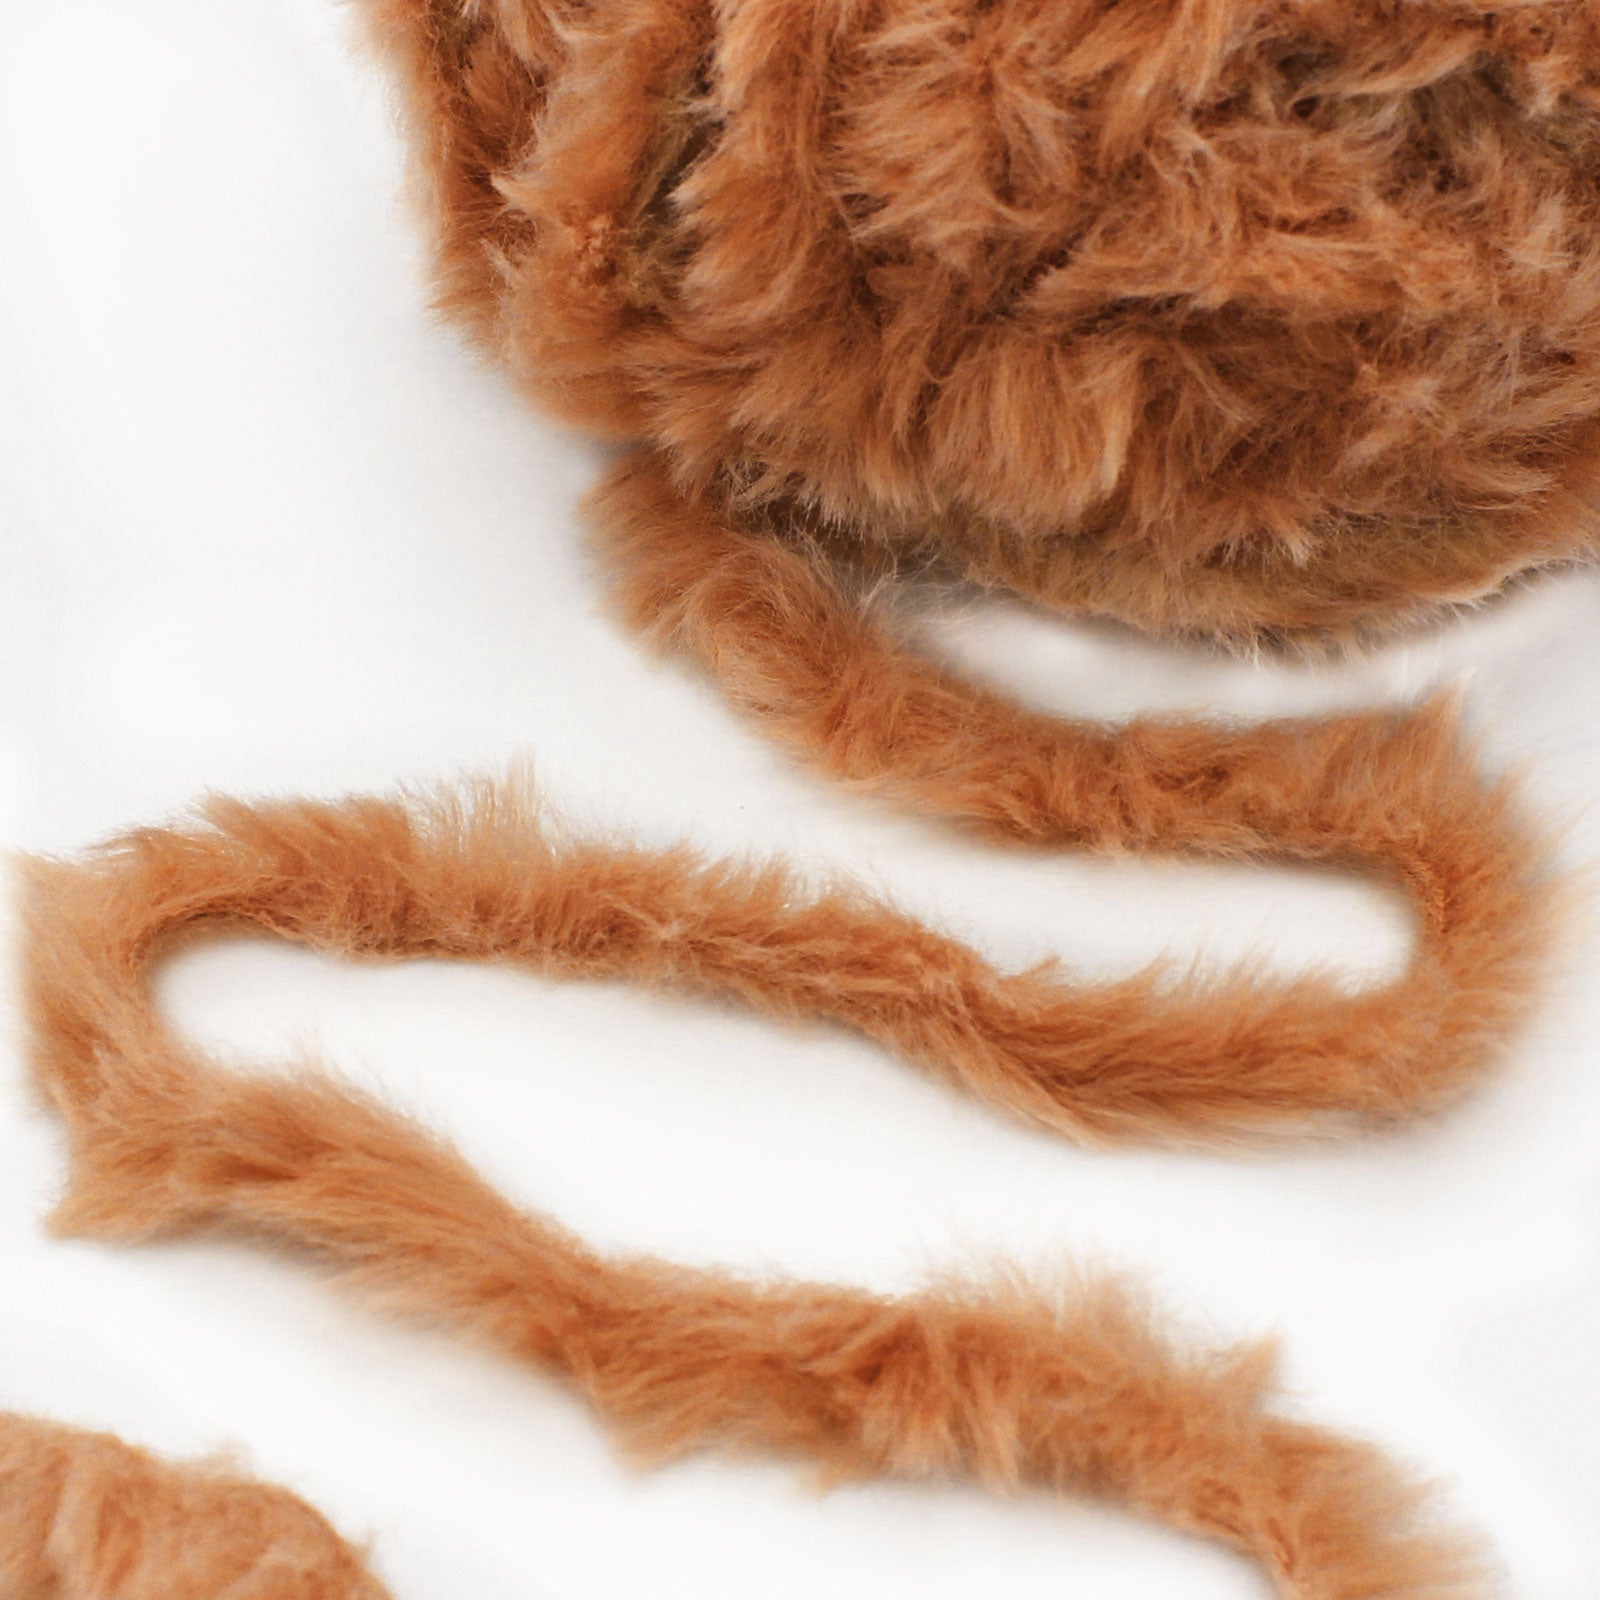 1PC 50g Soft Fluffy Faux Fur Yarn Hand Knitting Crochet Wool Yarn